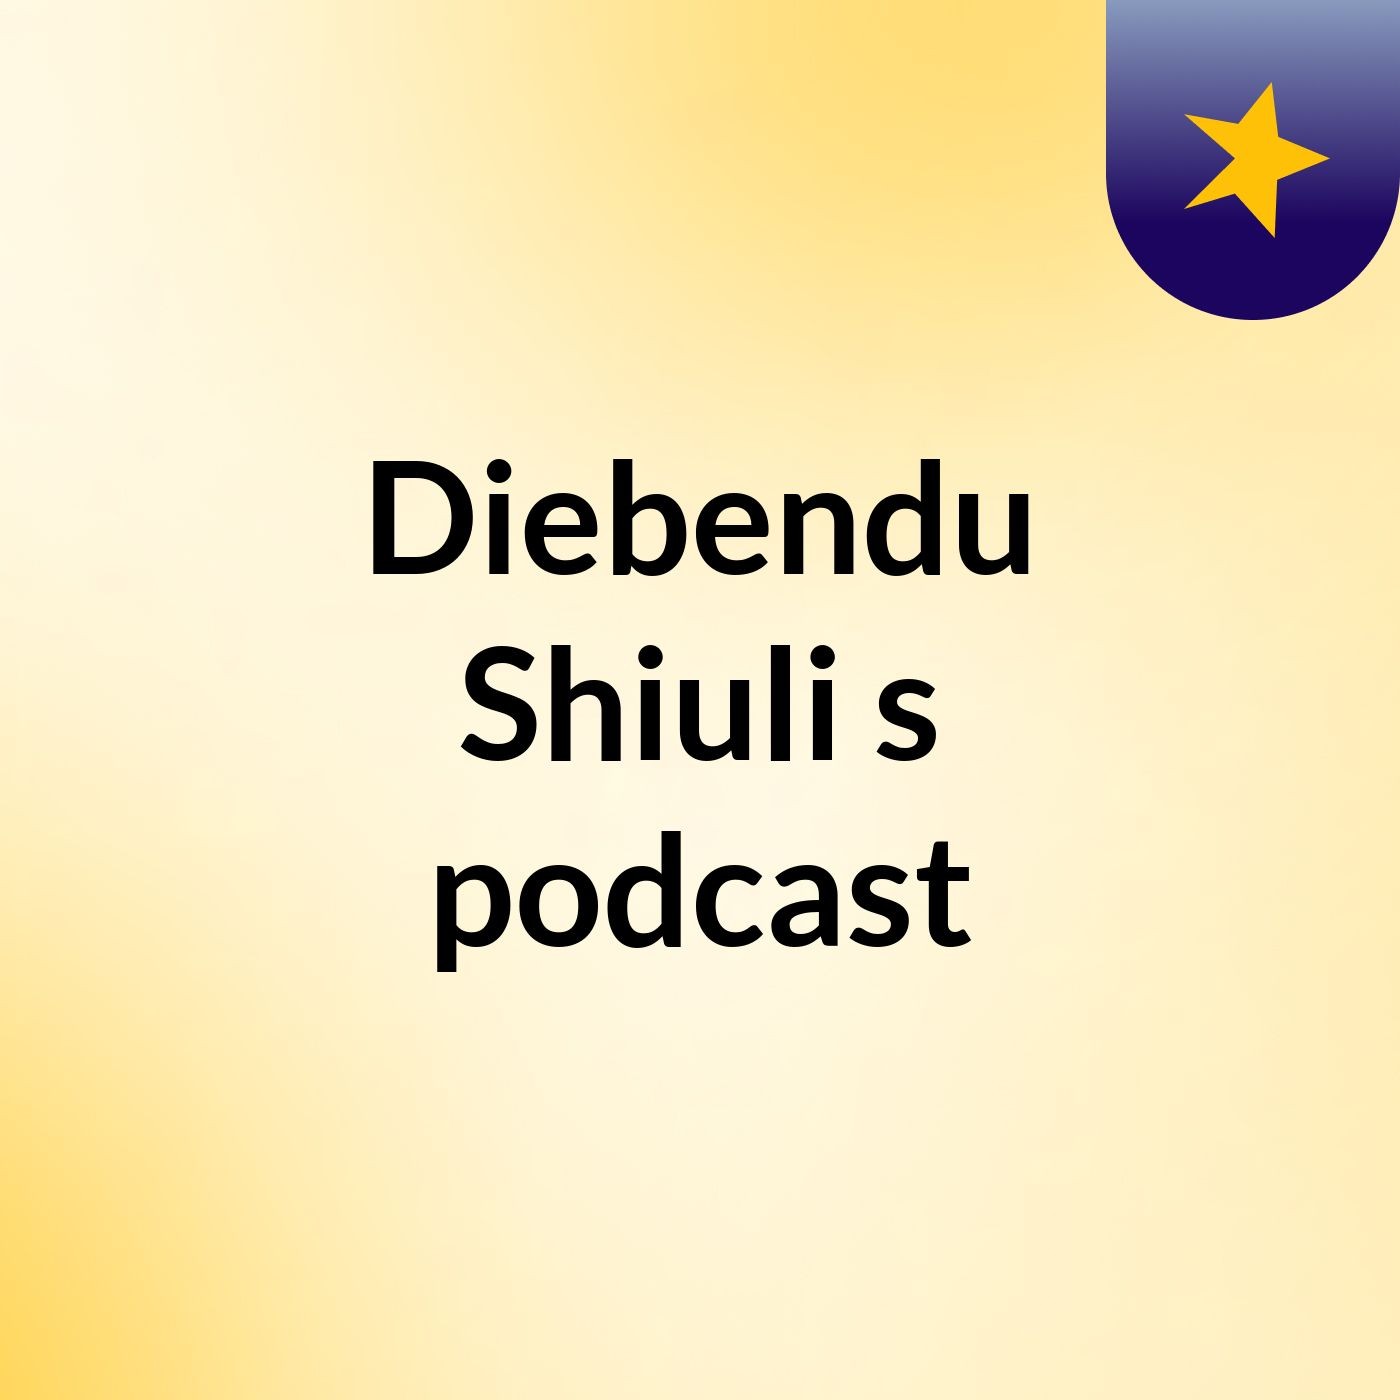 Episode 3 - Diebendu Shiuli's podcast